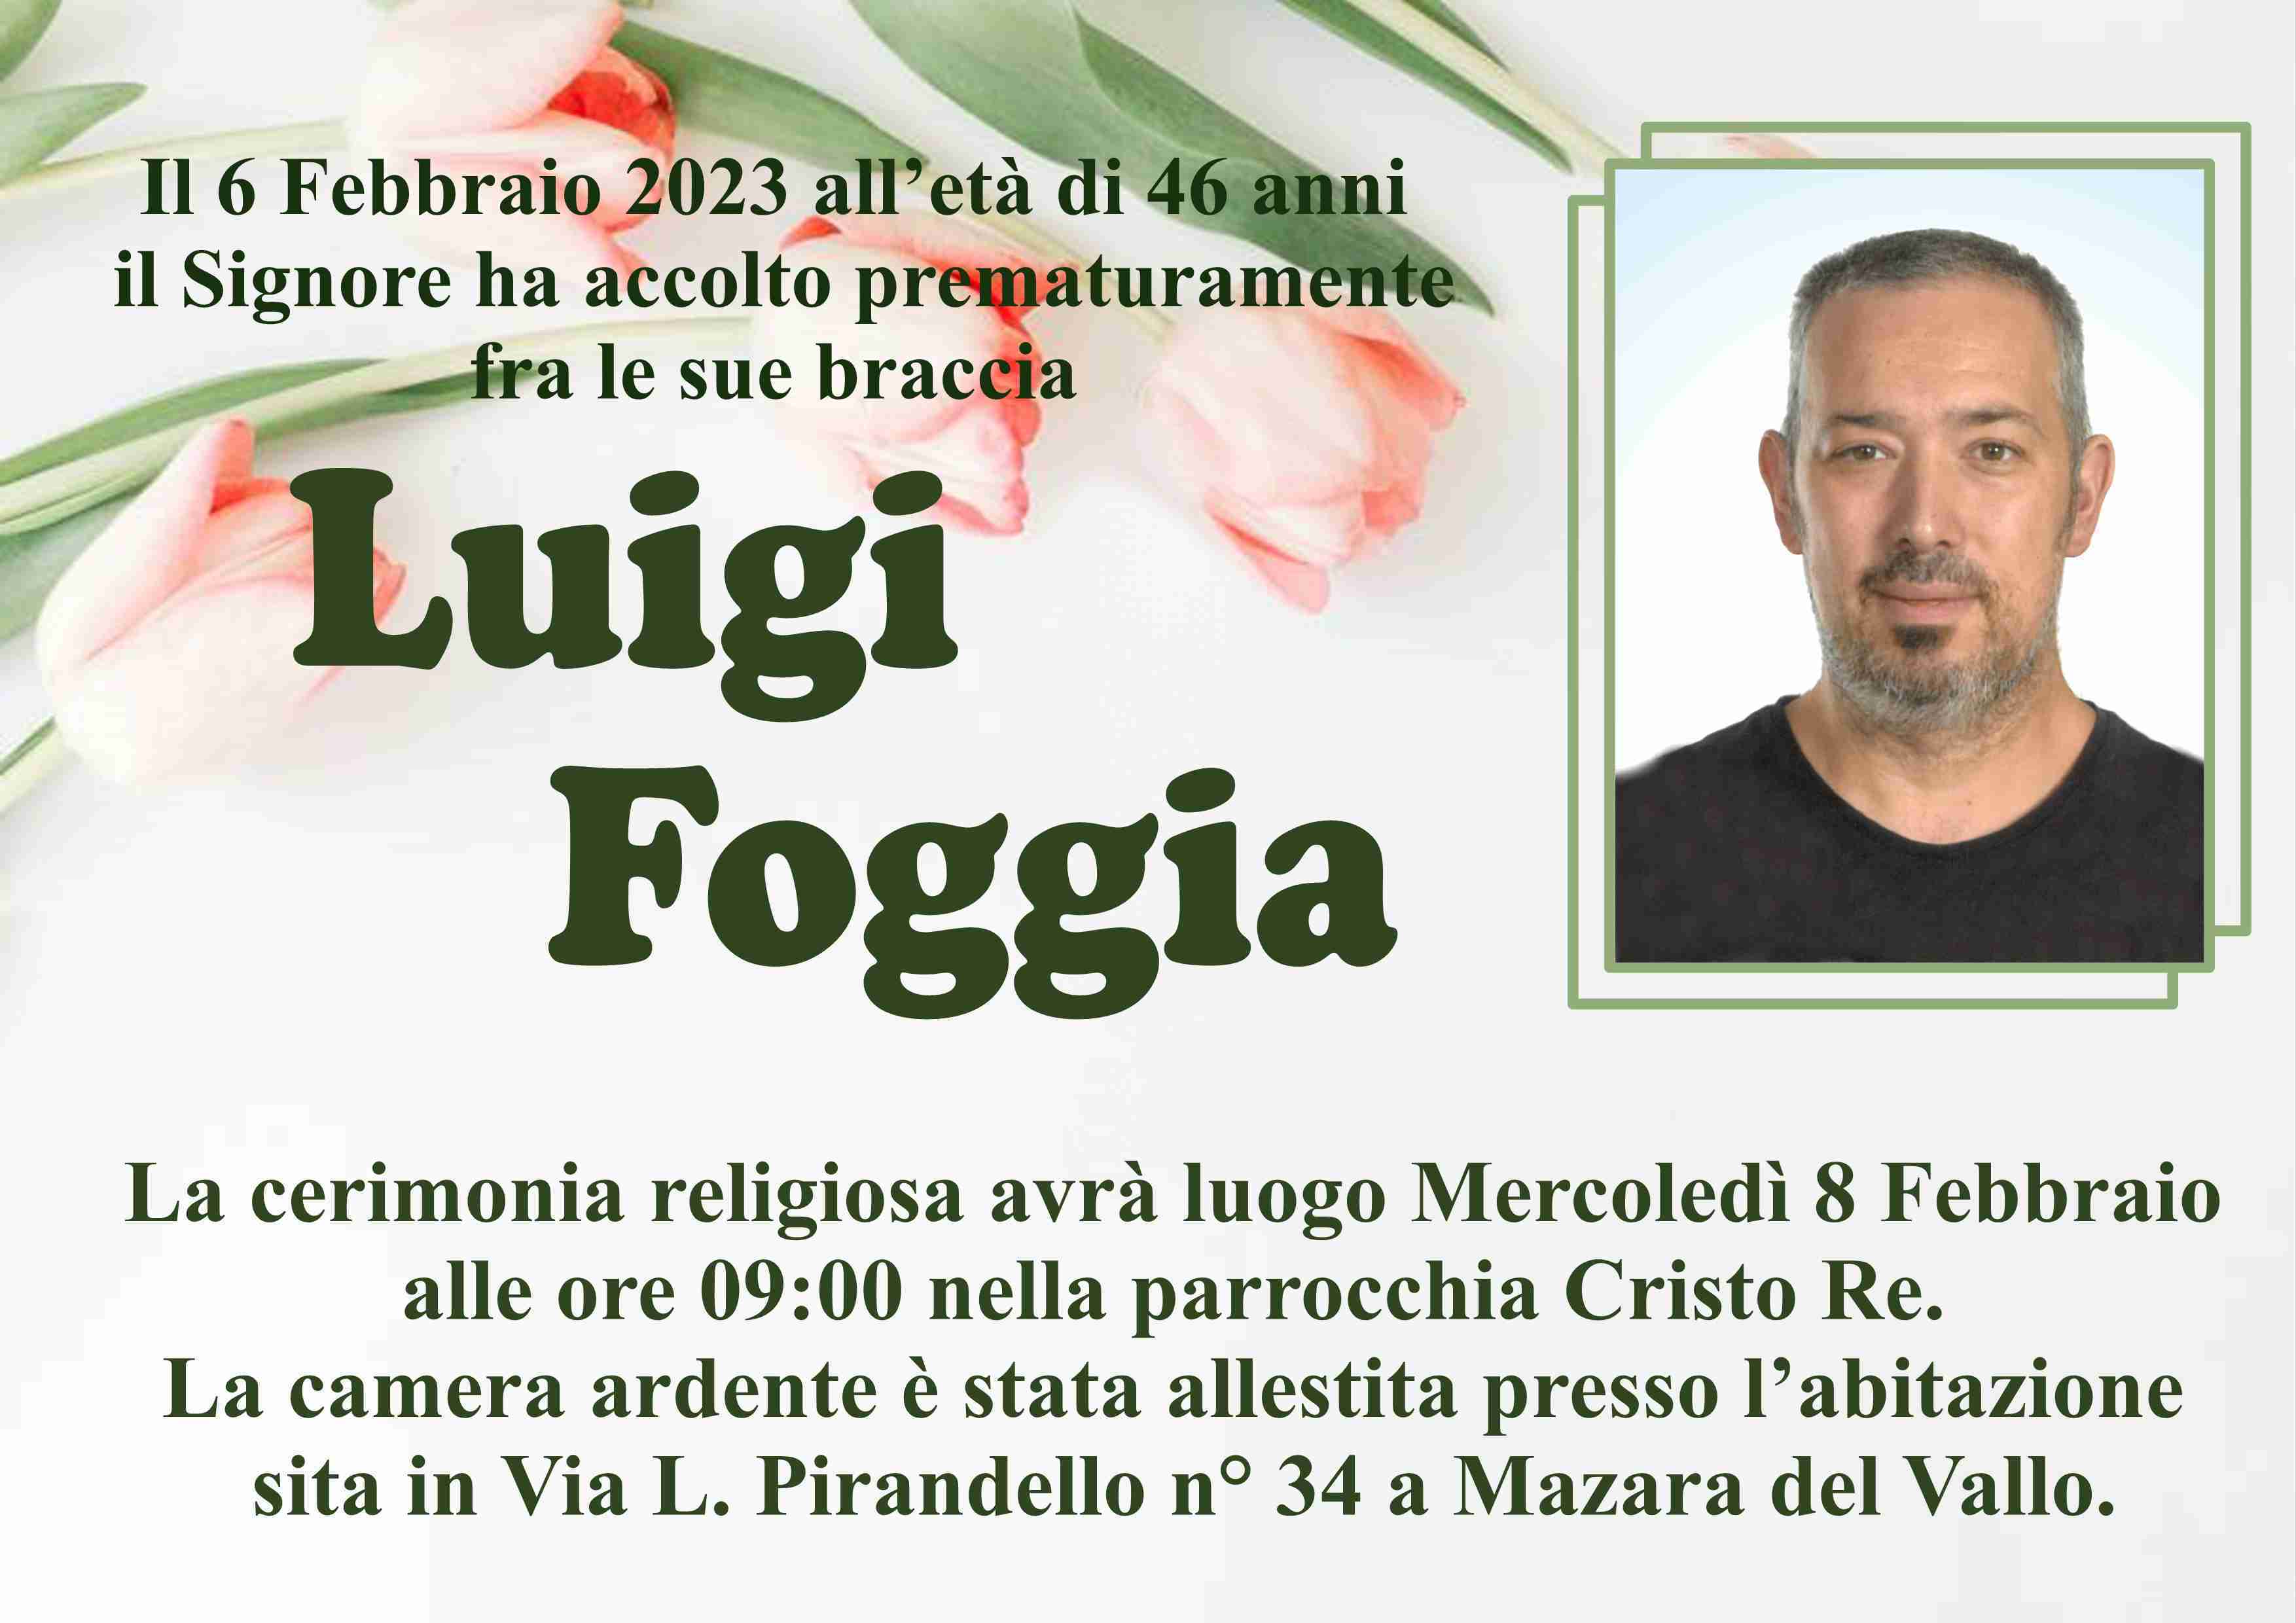 Luigi Foggia